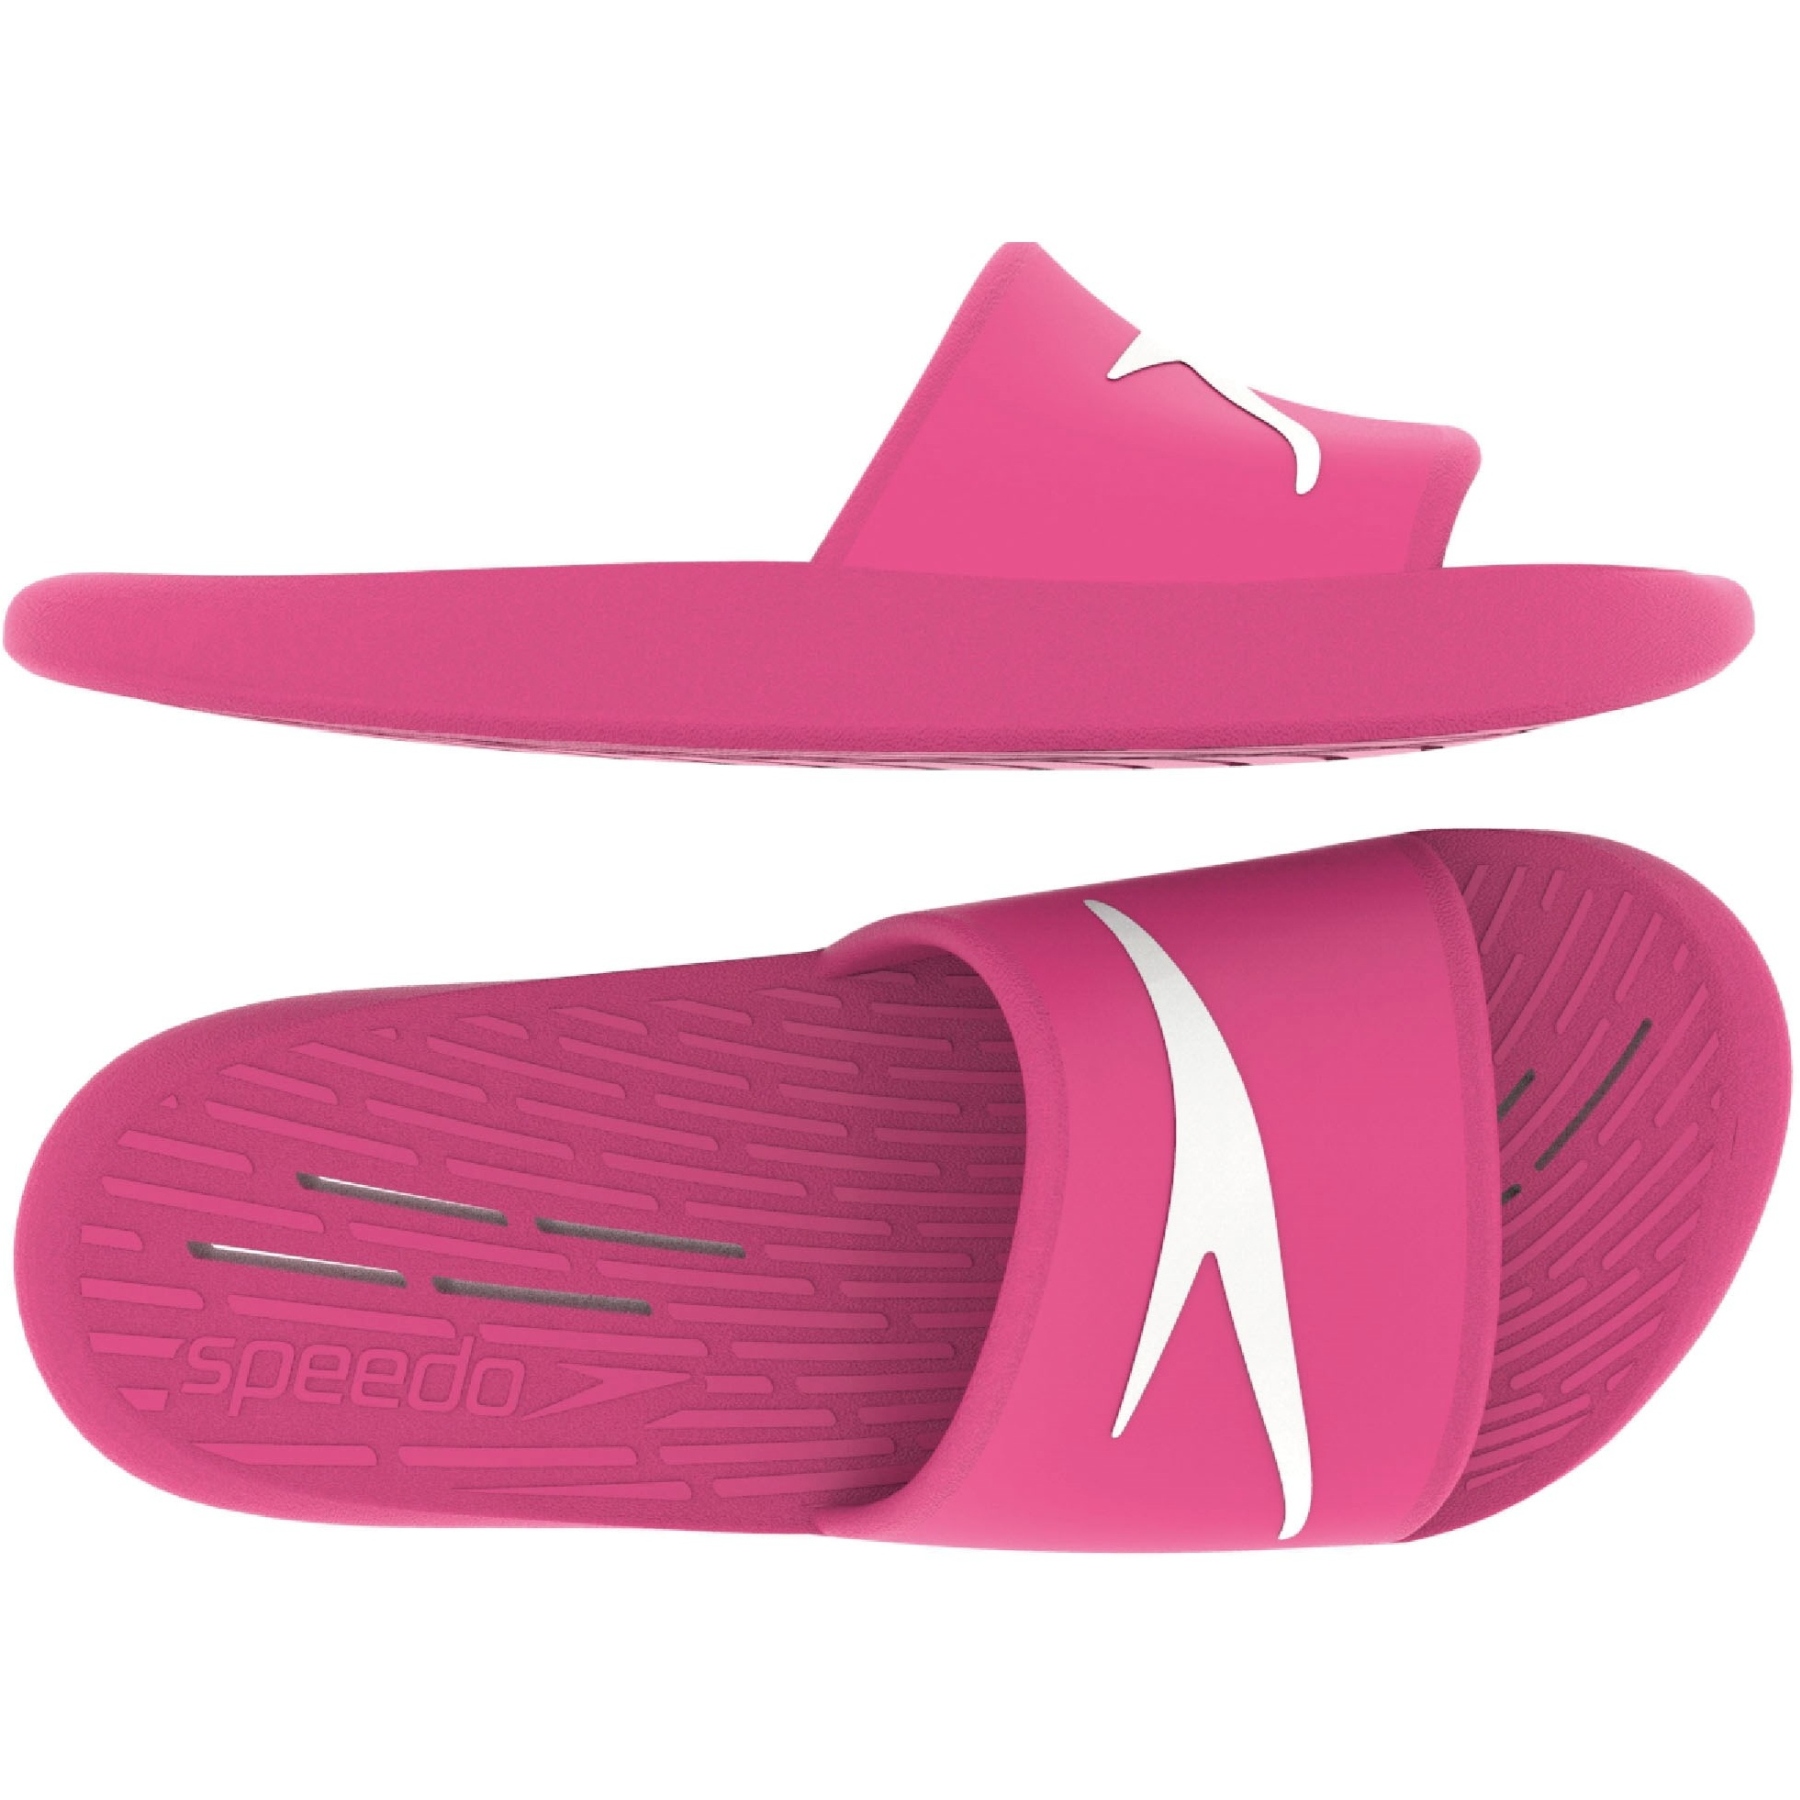 Foto de Speedo Slide Zapatos de baño Mujer - vegas pink